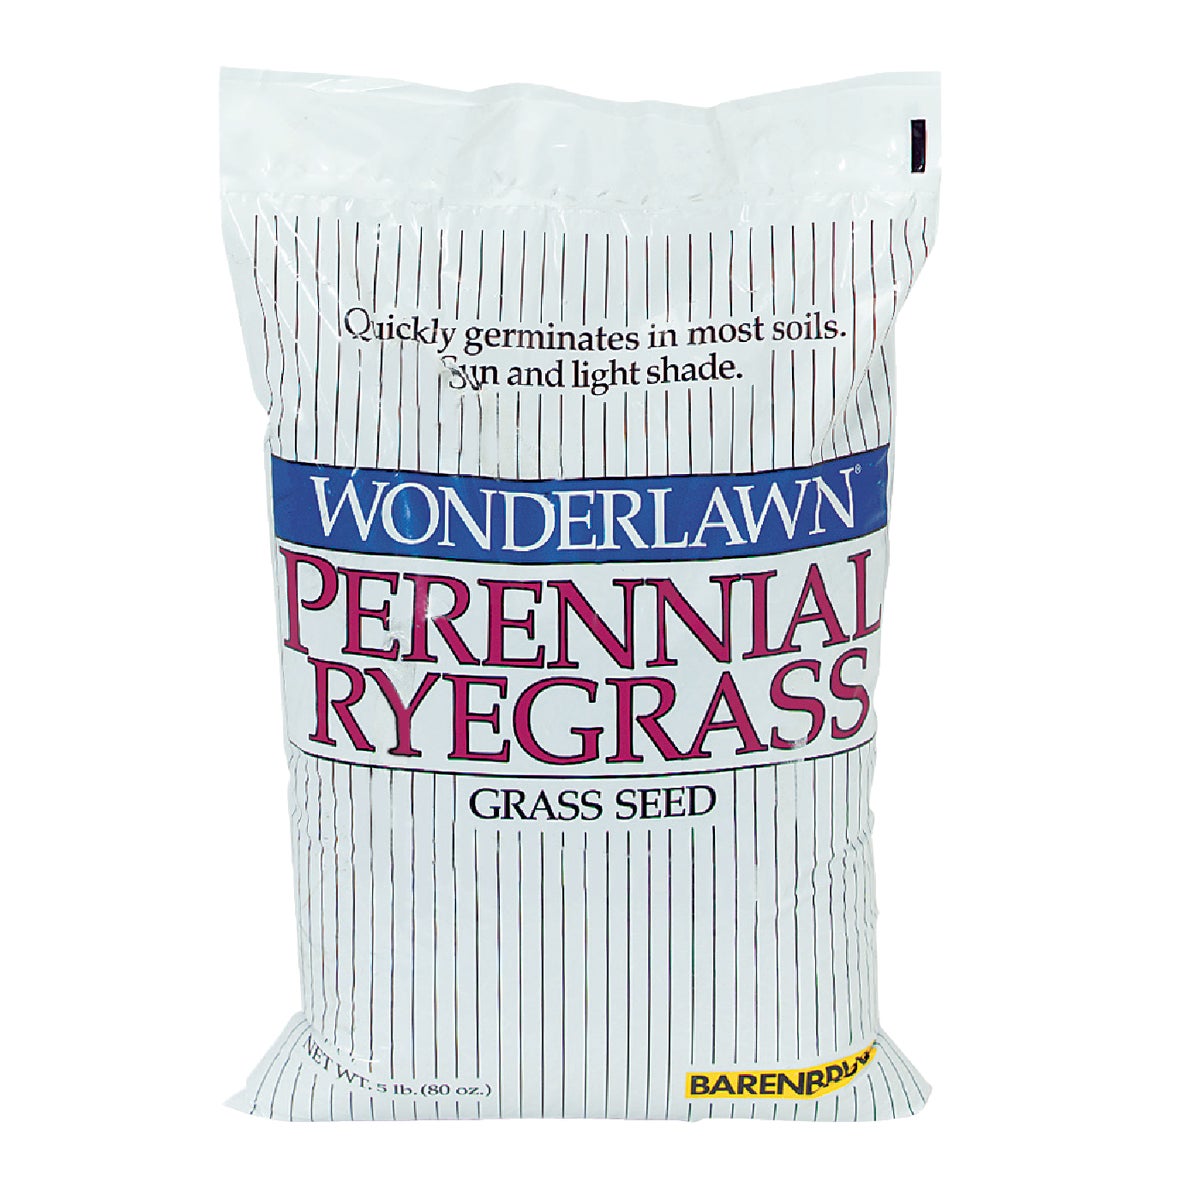 Item 763152, Perennial ryegrass grass seed.